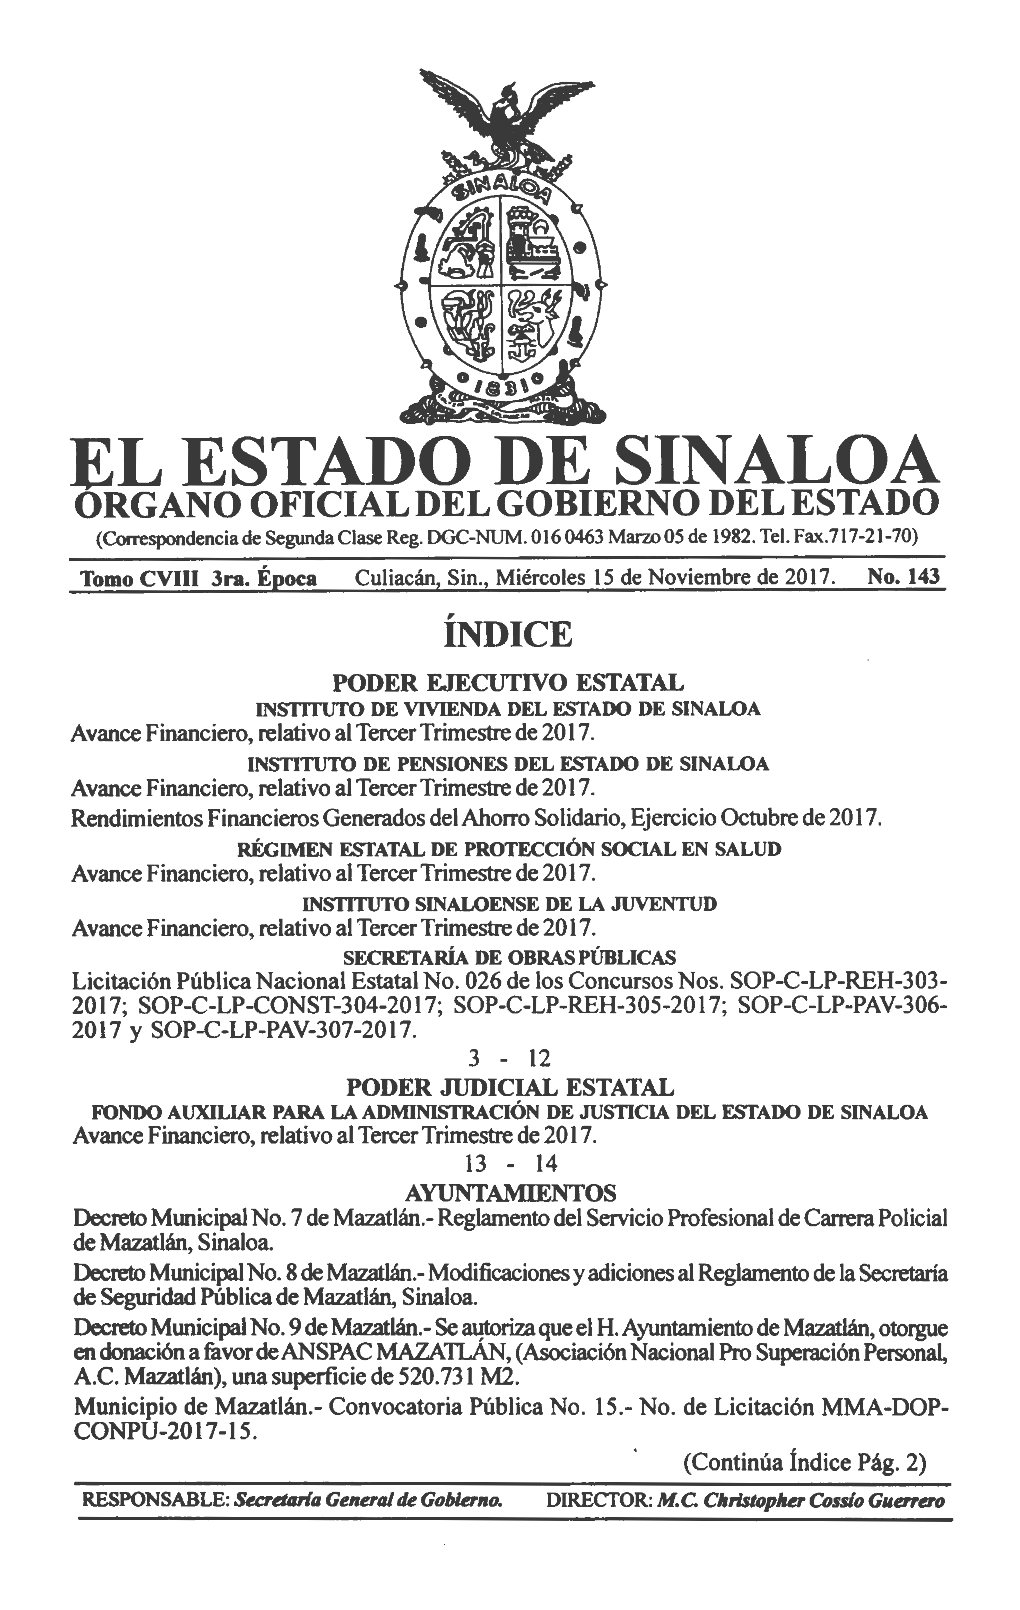 EL ESTADO DE SINALOA ORGANO OFICIAL DEL GOBIERNO DEL ESTADO (Correspondencia De Segunda Clase Reg